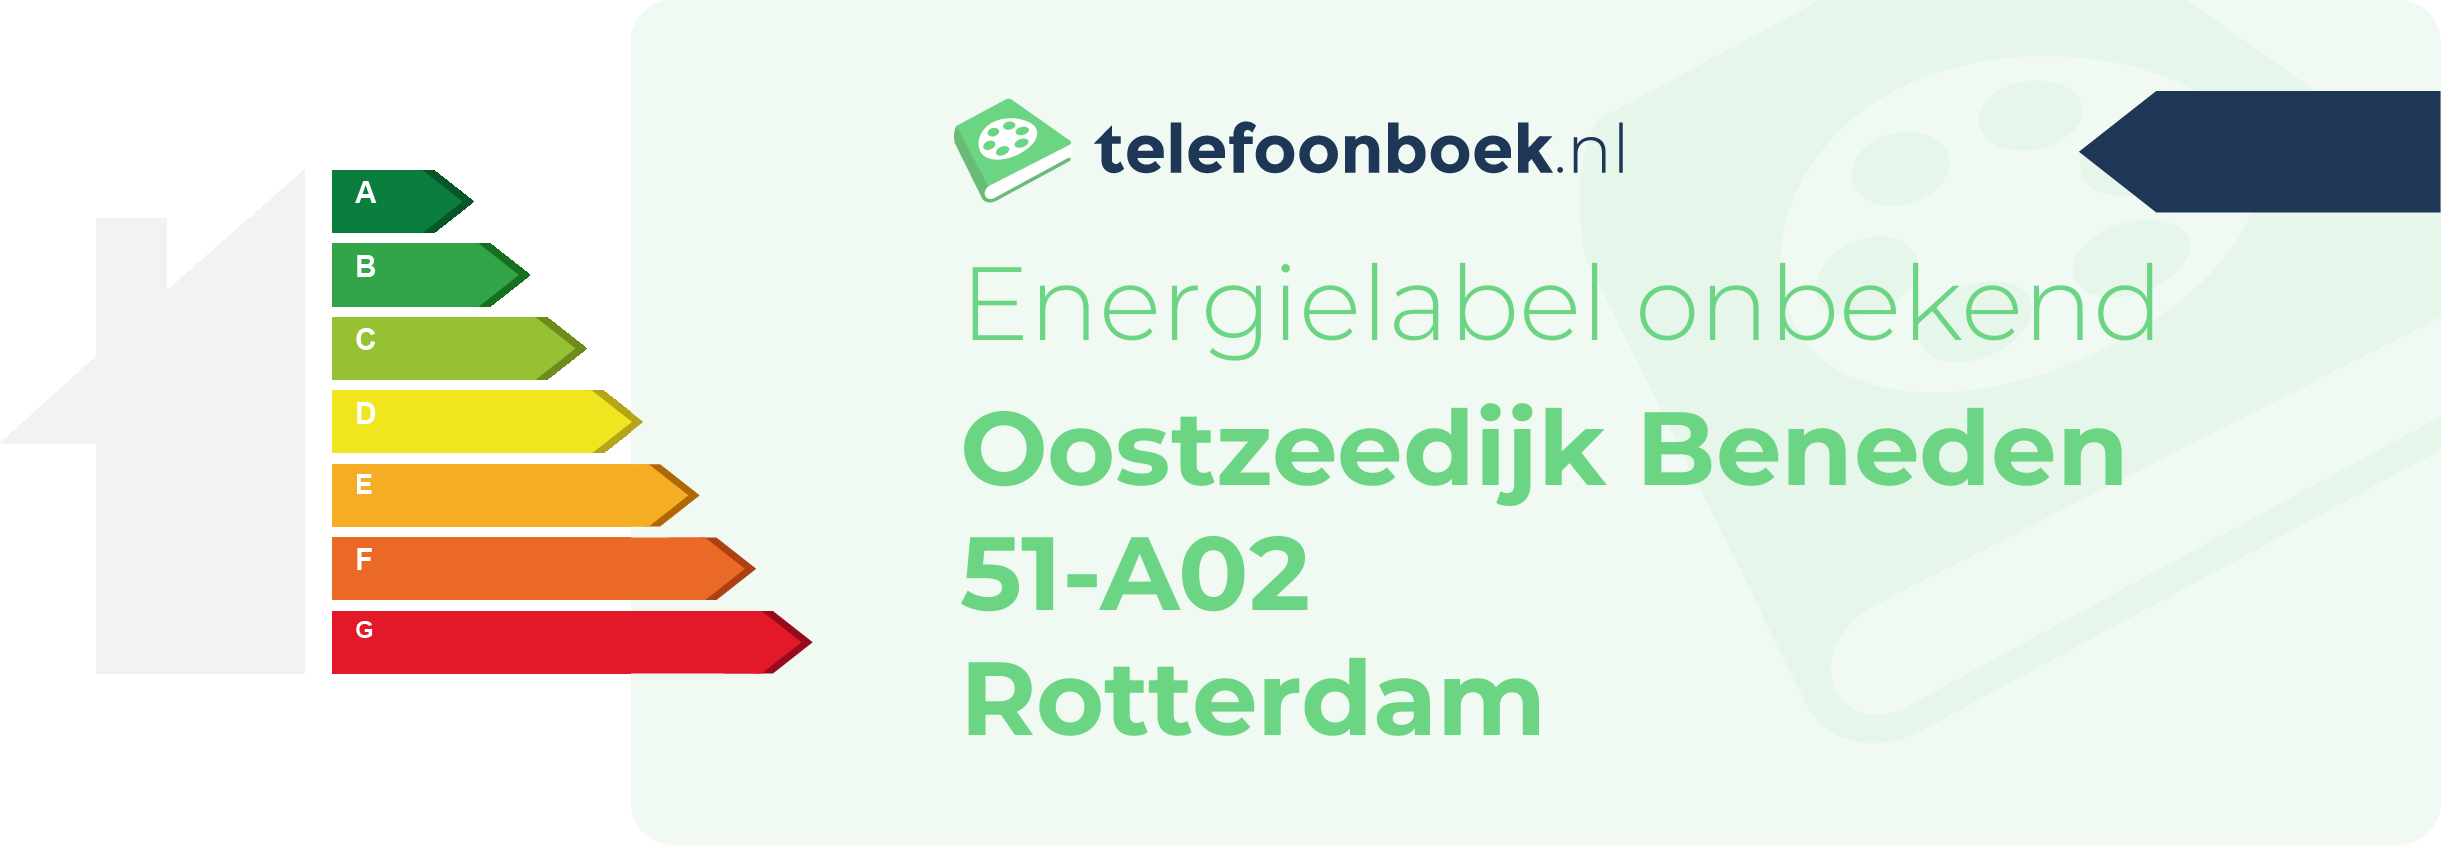 Energielabel Oostzeedijk Beneden 51-A02 Rotterdam